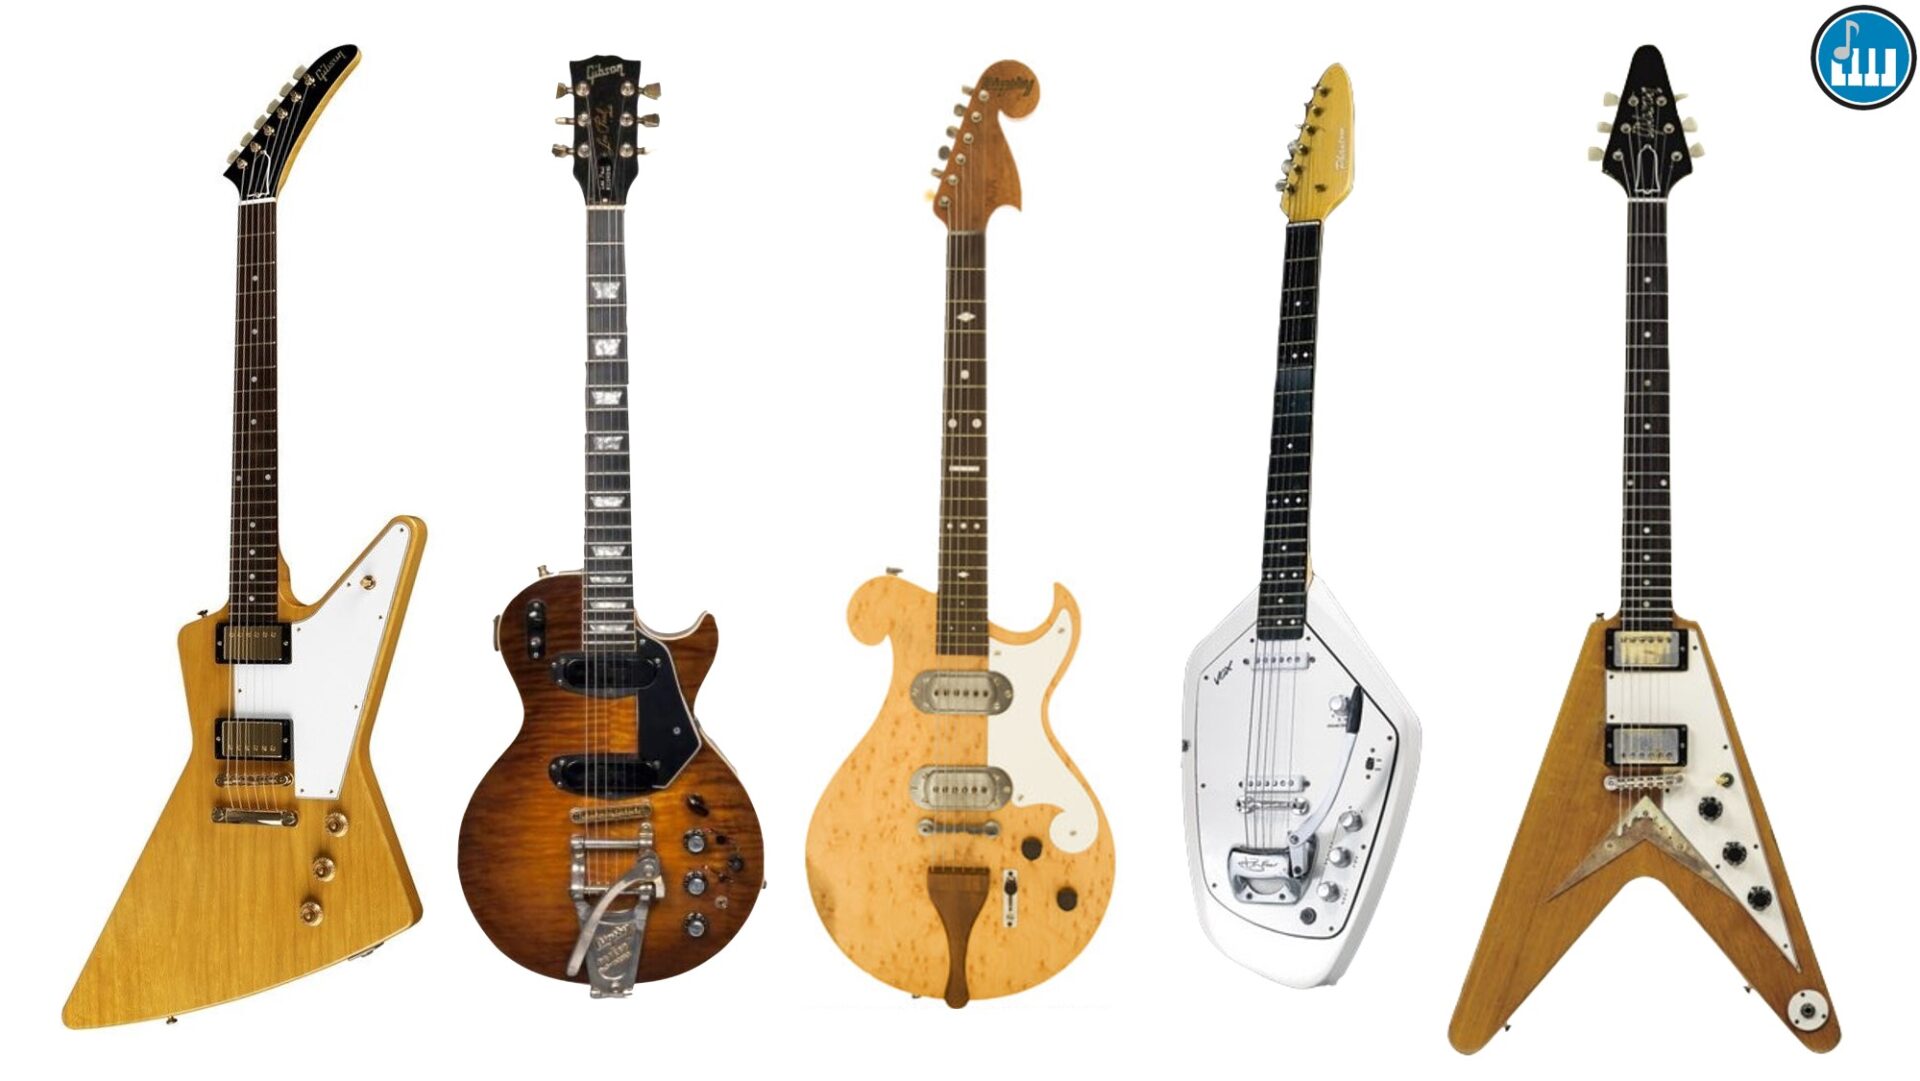 Las guitarras eléctricas más raras, coleccionables y deseadas del mundo